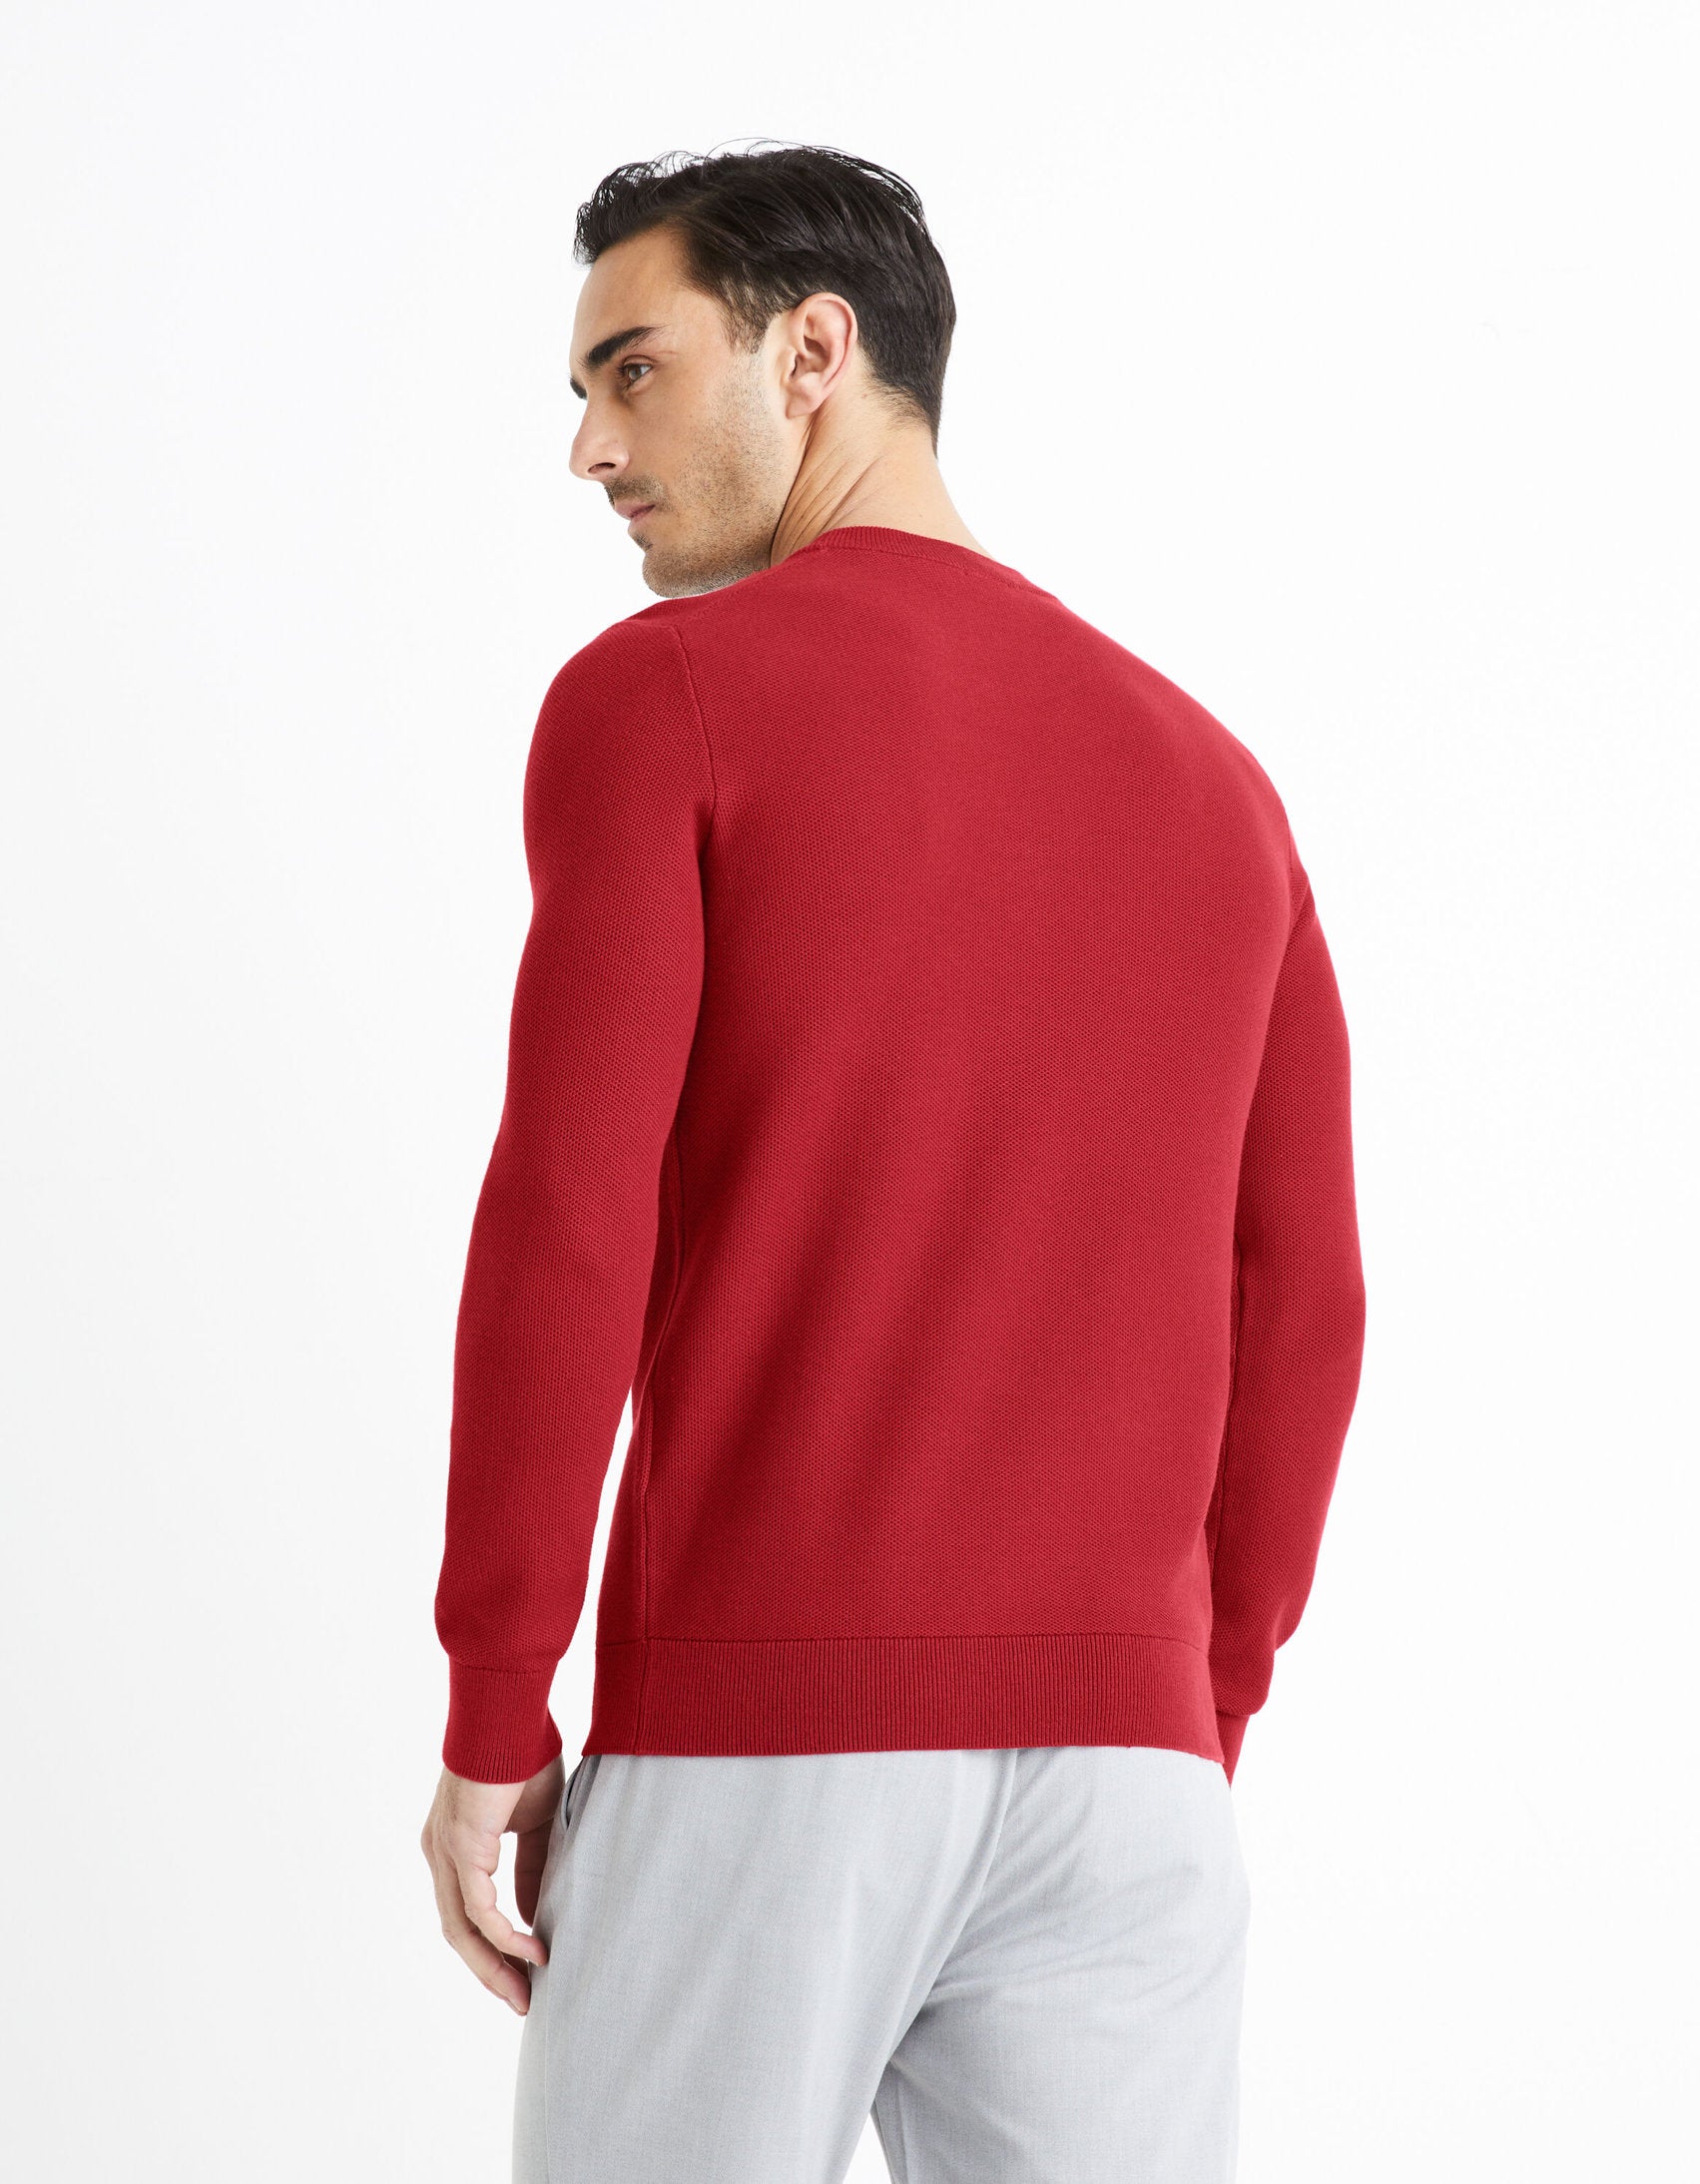 100% Cotton Round Neck Sweater - Burgundy_BEPIC_BURGUNDY_04